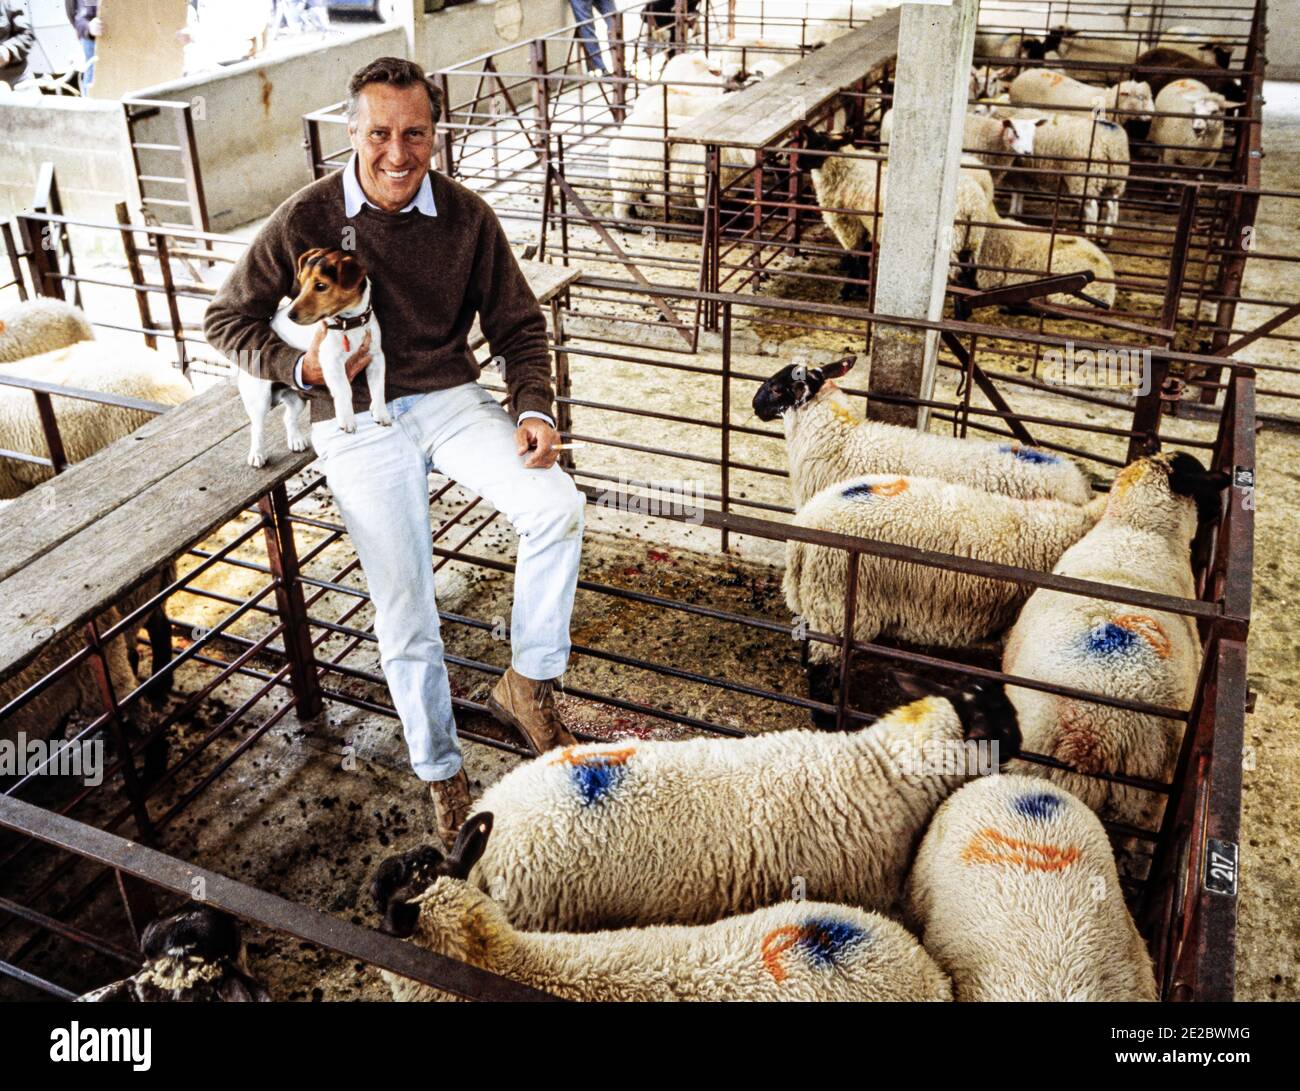 HERTFORD - INGHILTERRA 1986. Frederick McCarthy Forsyth (romanziere) in posa per la macchina fotografica durante la visita Hertford mercato delle pecore e del bestiame nel 1986. Foto di G Foto Stock